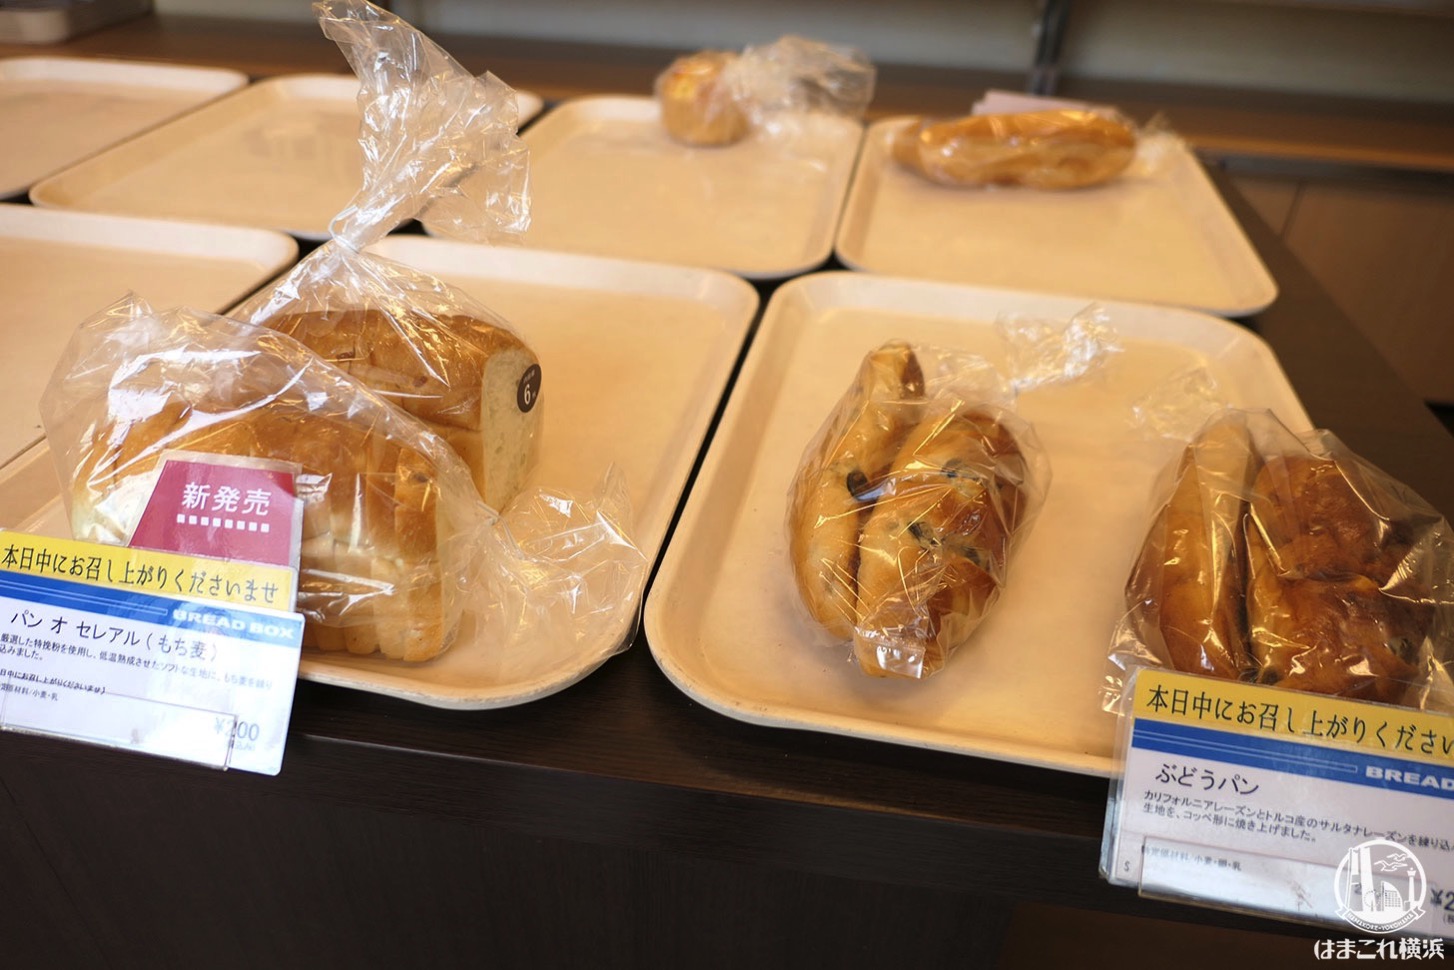 サンジェルマン ブレッドボックス 北新横浜店 アウトレットの惣菜パン・菓子パン